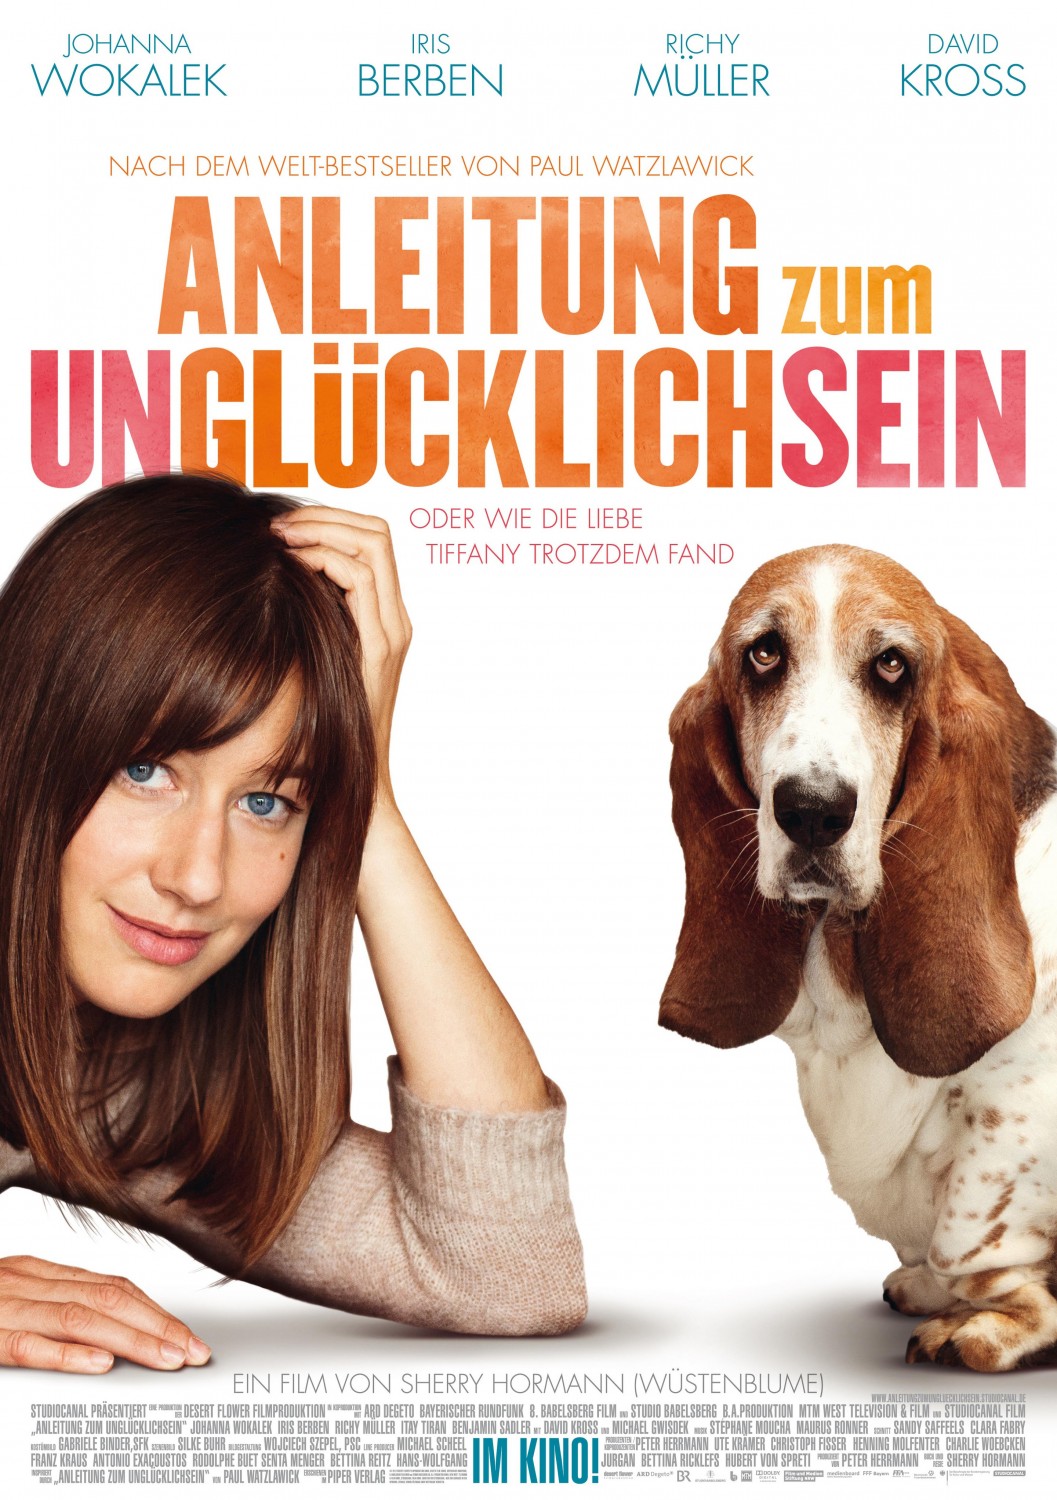 Extra Large Movie Poster Image for Anleitung zum Unglücklichsein 